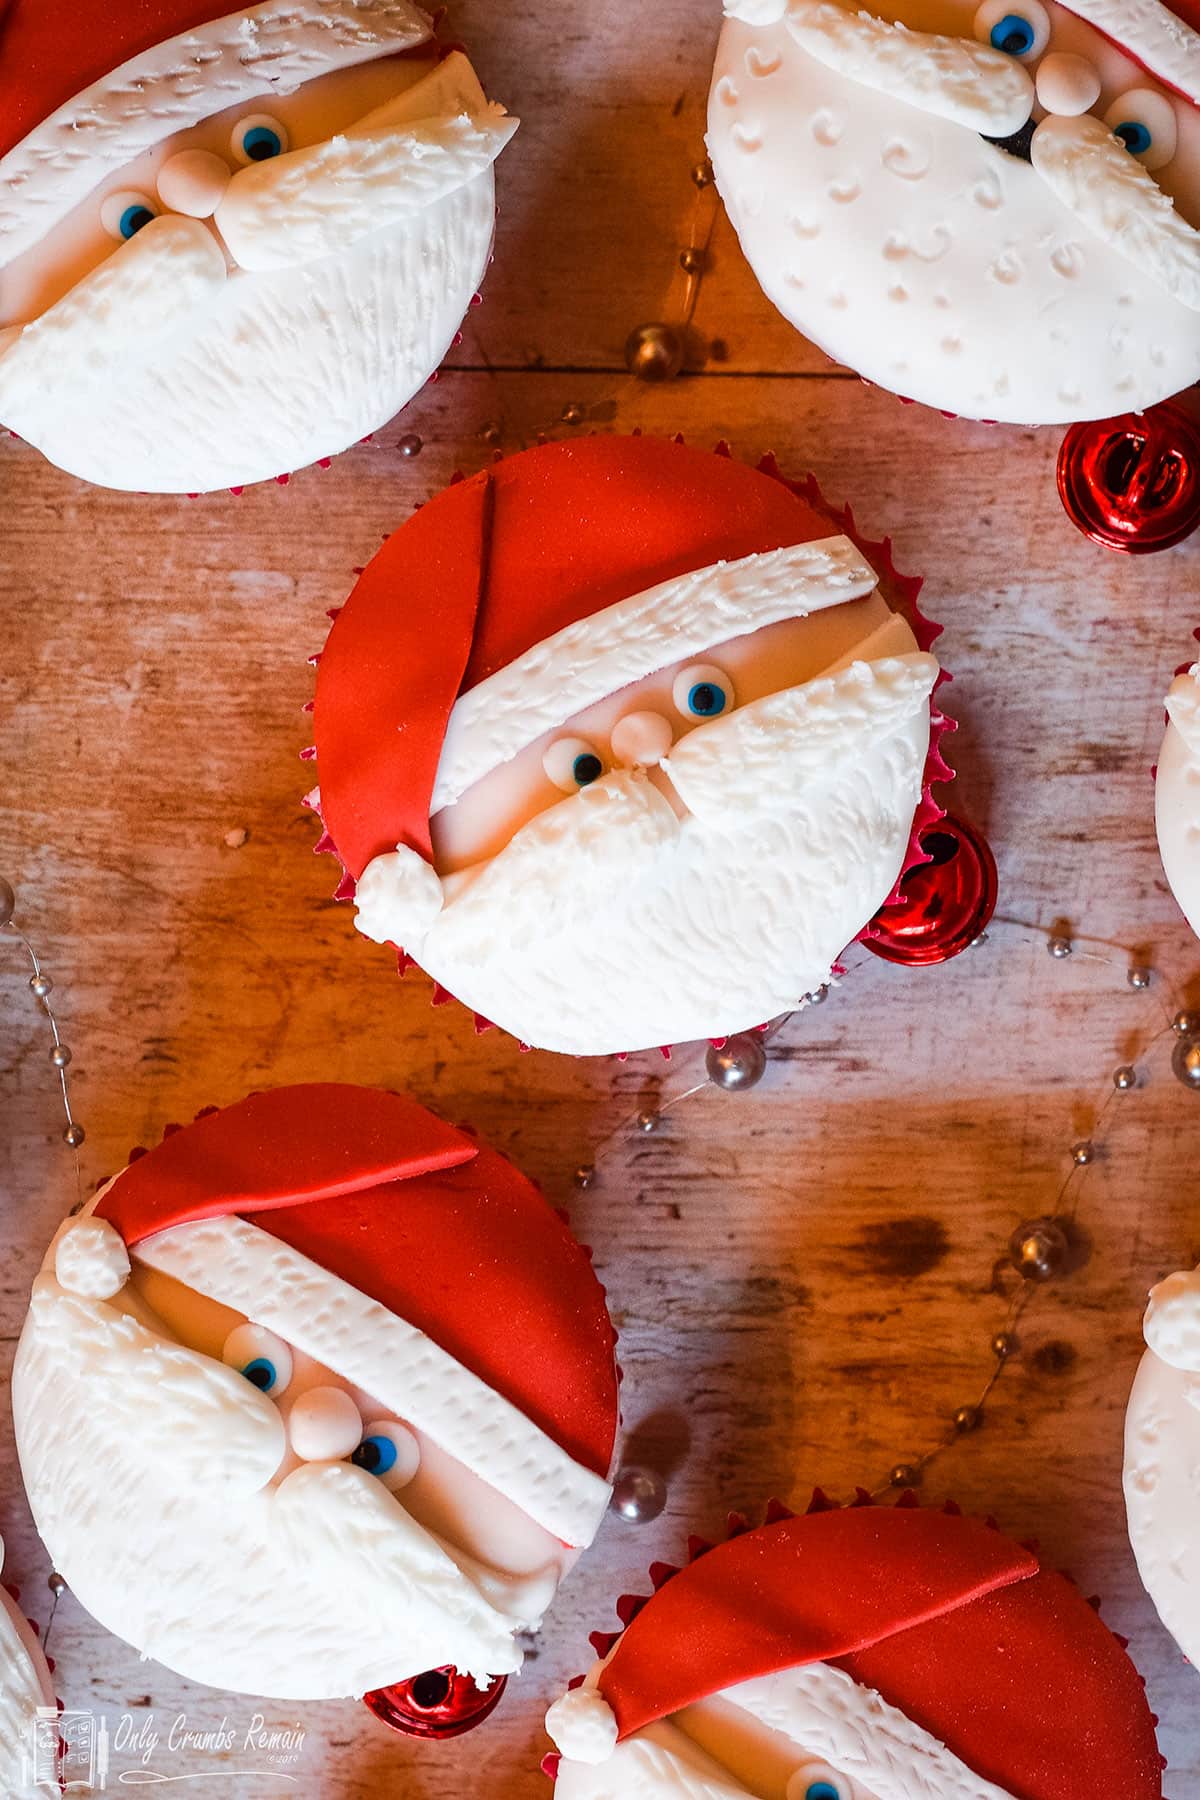 15 Christmas Baking Recipes - Indecision & Cake